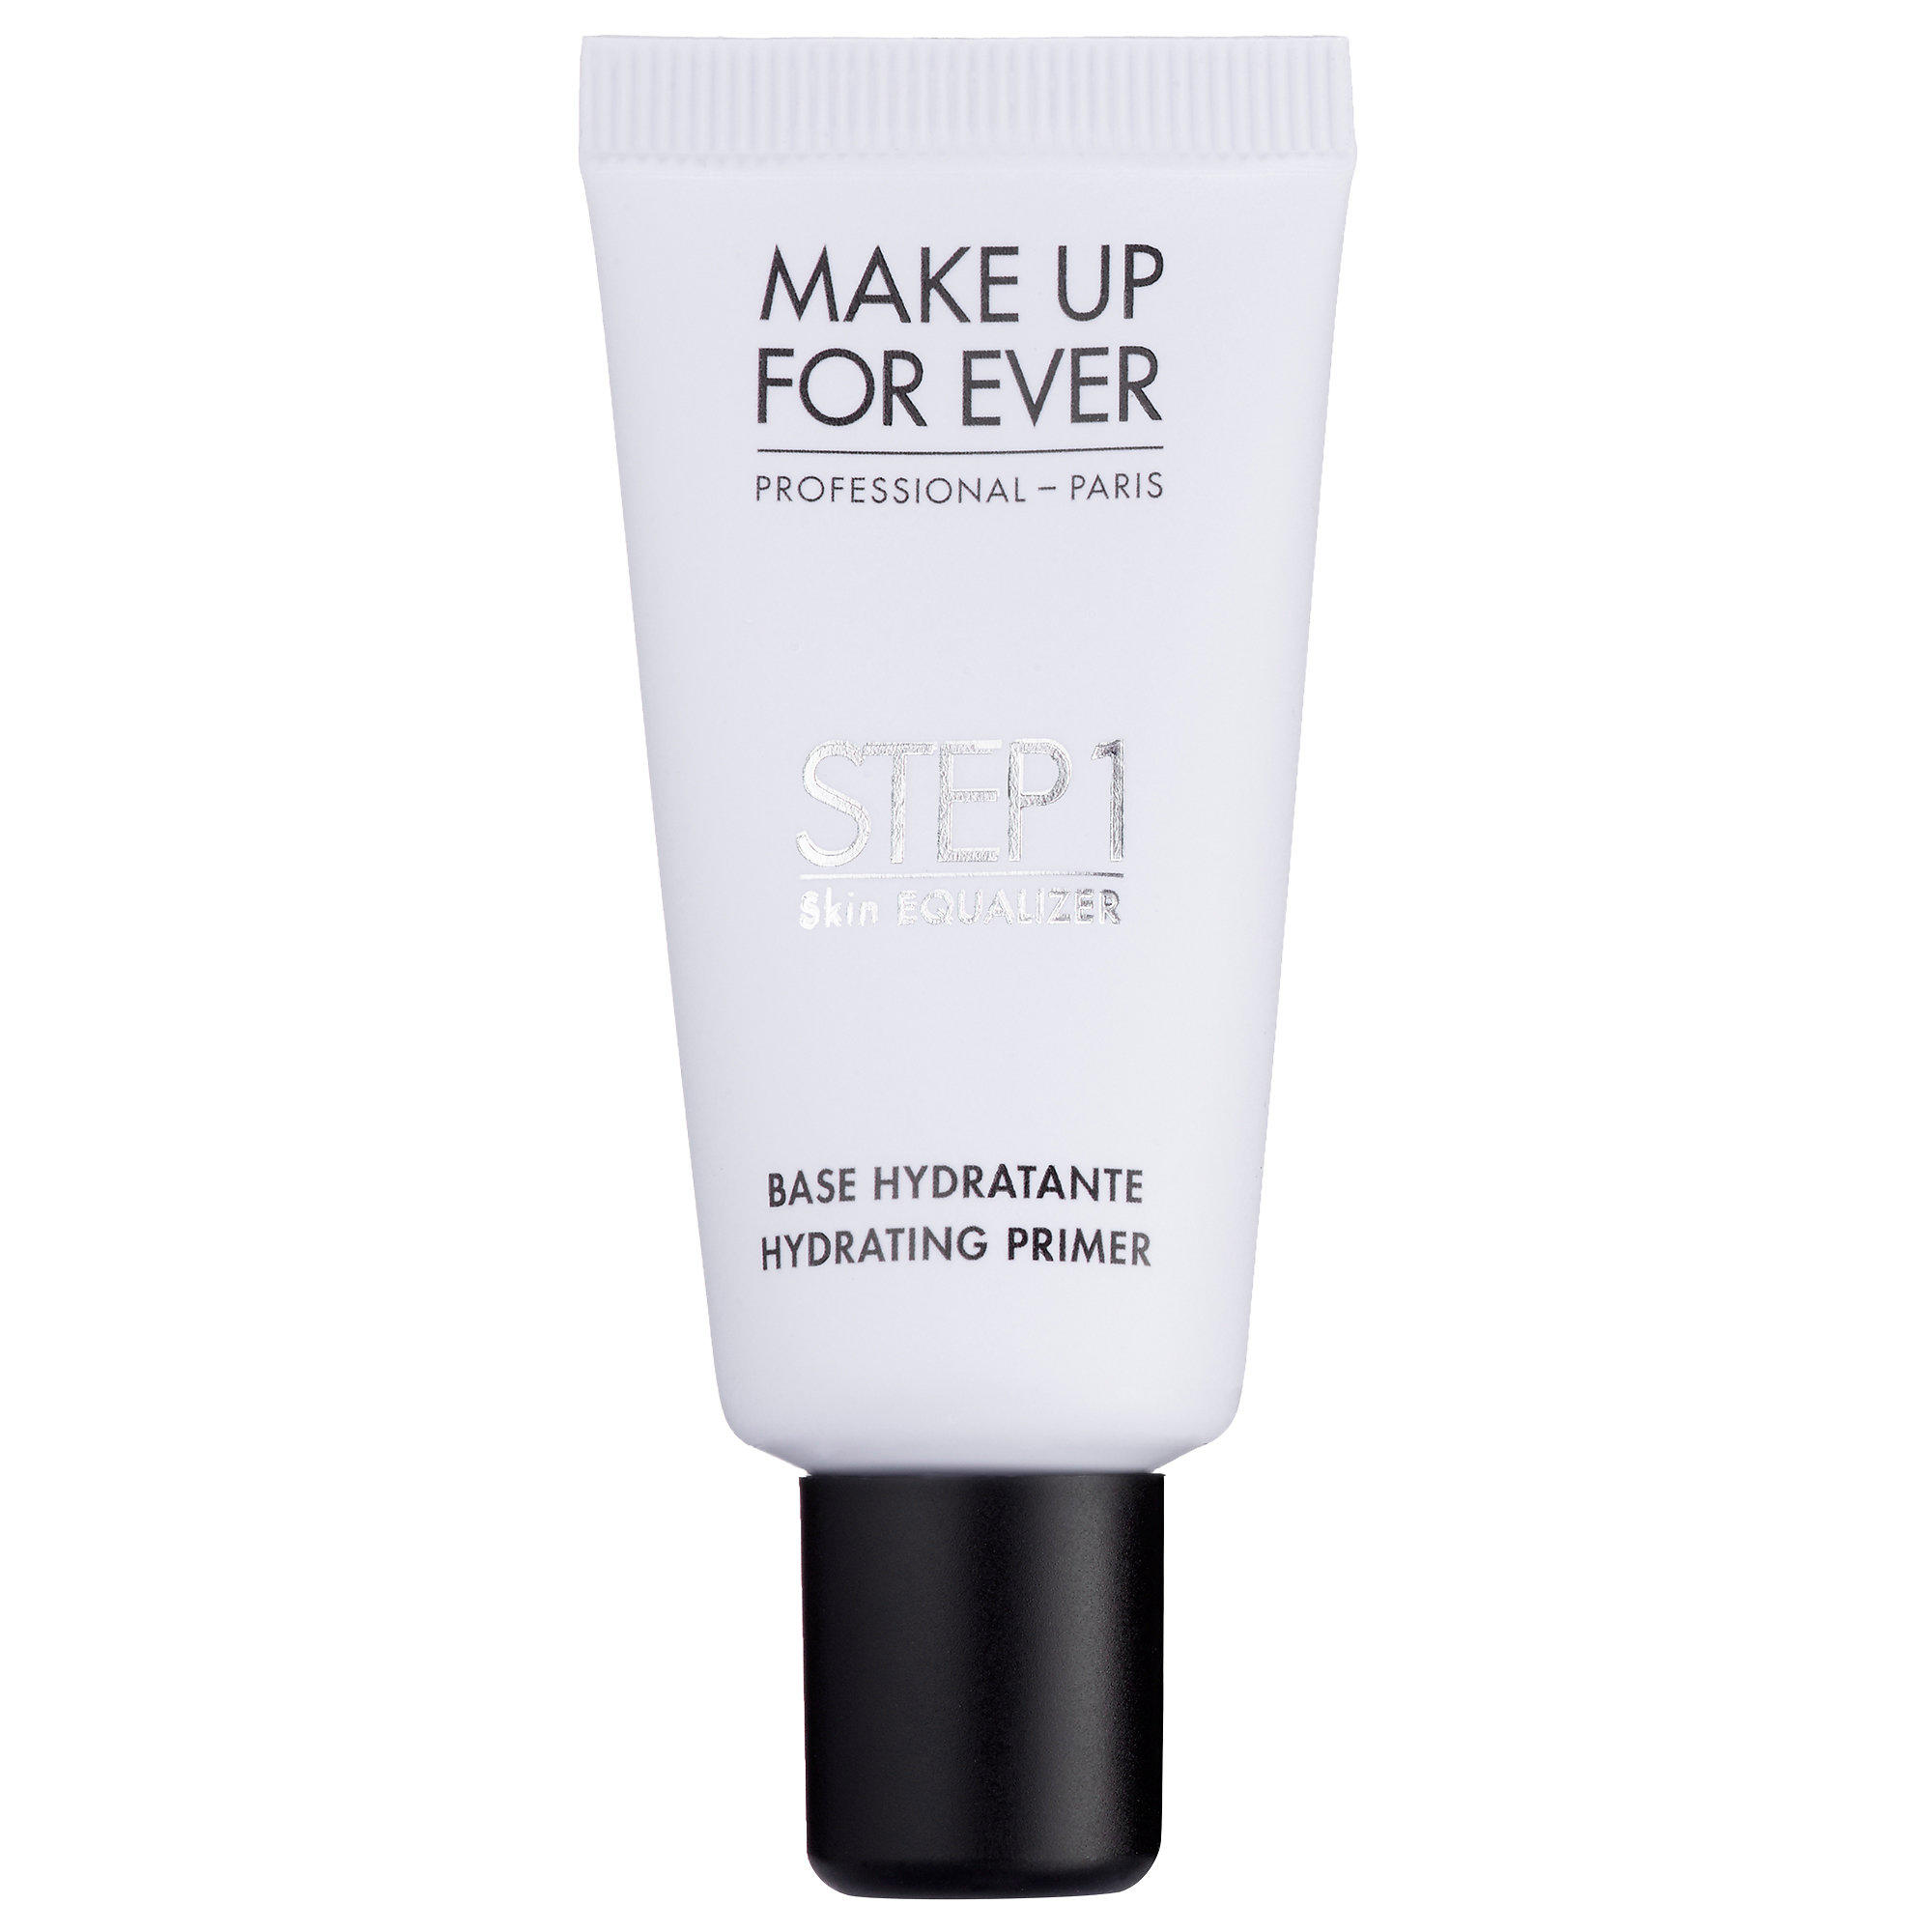 Makeup Forever Hydrating Primer Step 1 Skin Equalizer Travel Size 15ml